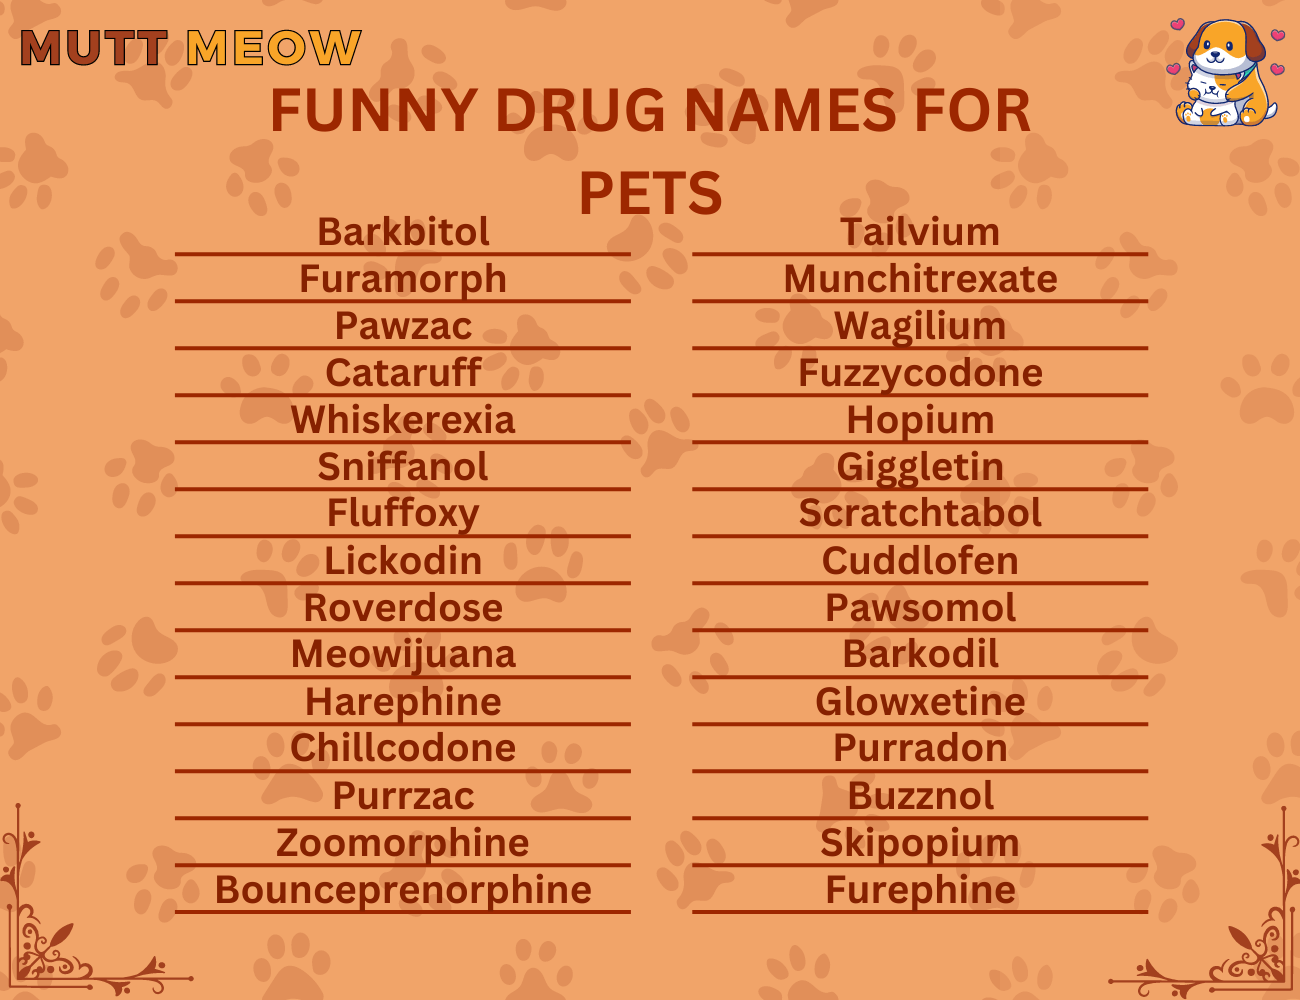 Funny Drug Names for pets (1)